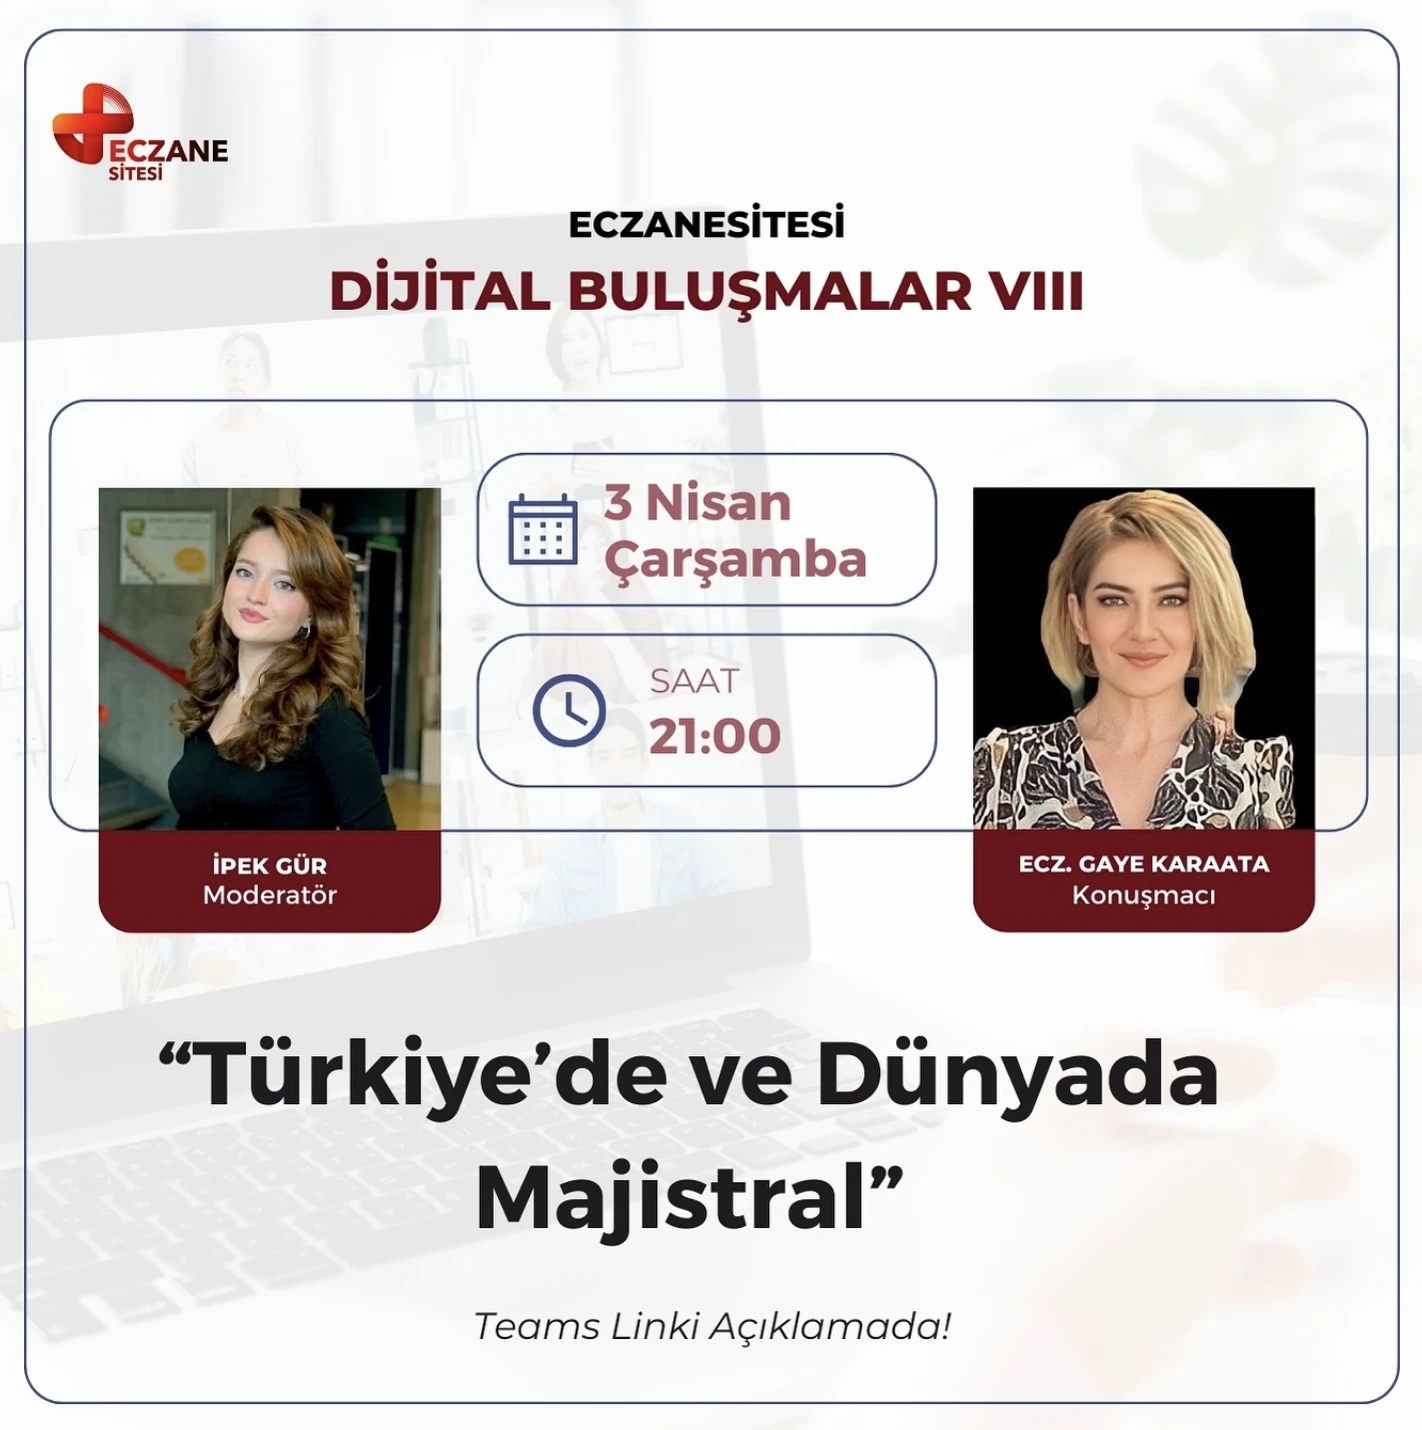 Türkiye'de ve Dünyada Majistral - Dijital Buluşmalar VIII - Ecz Gaye Karaata